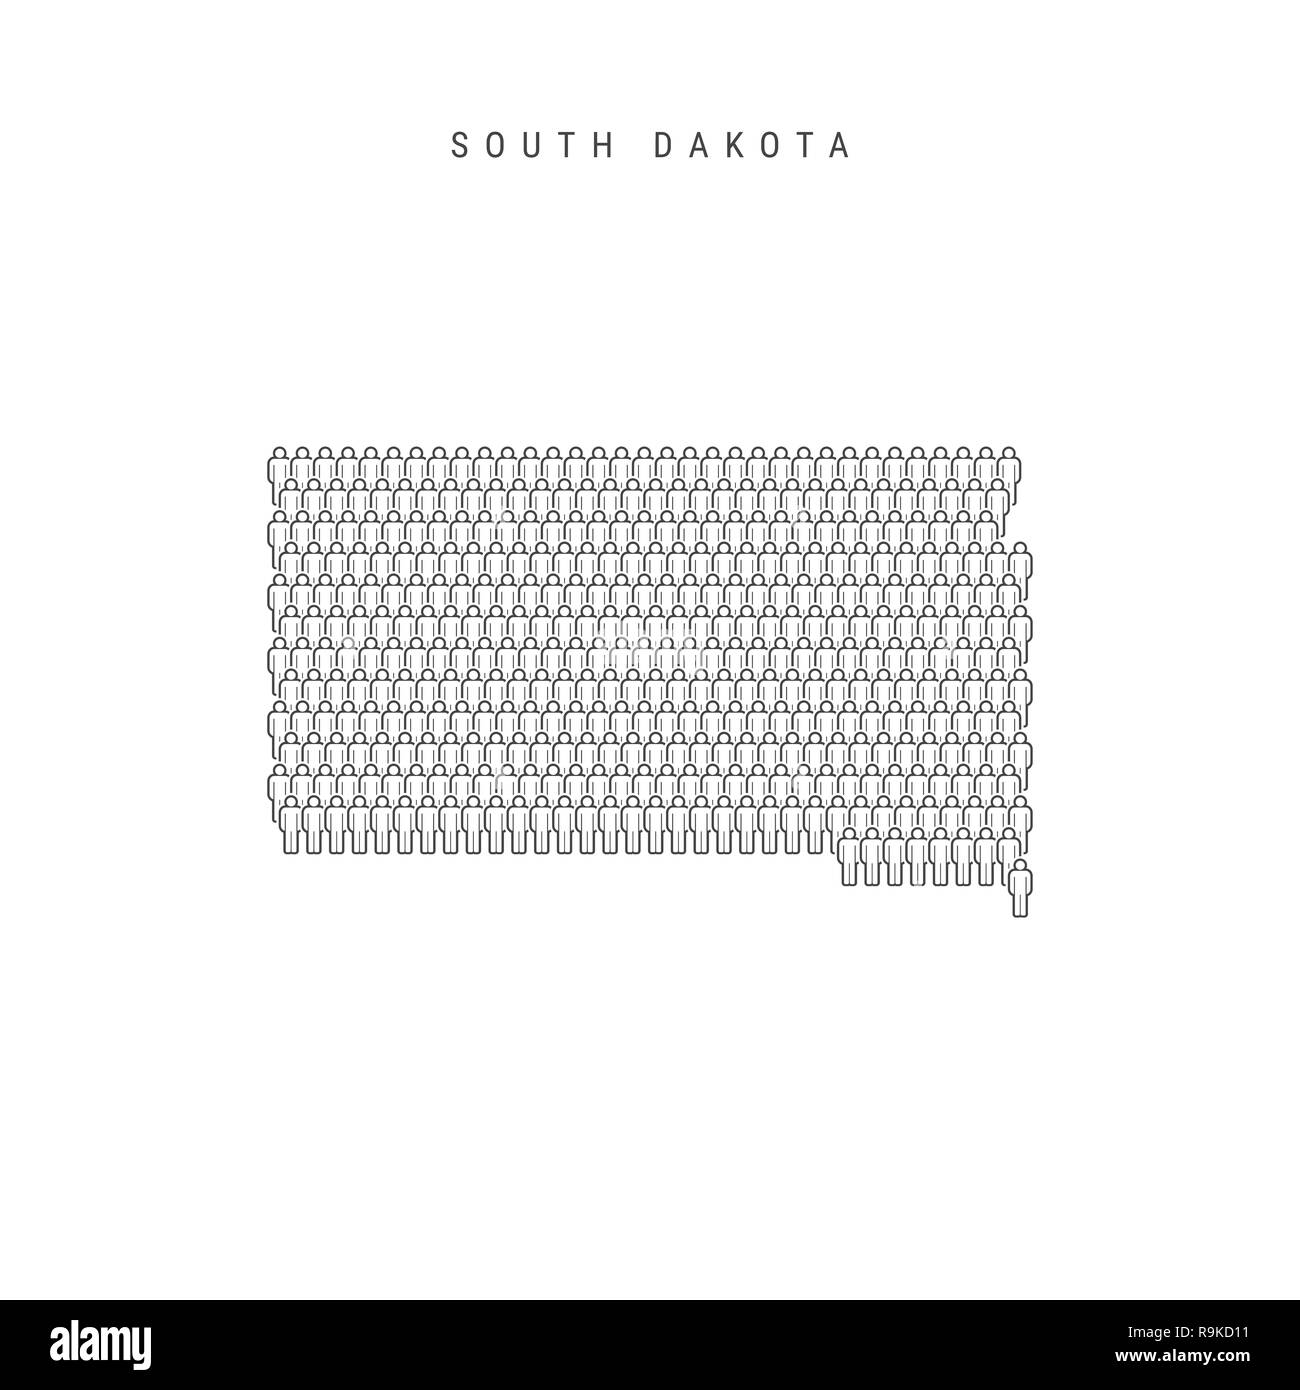 Leute Karte von South Dakota, USA. Stilisierte Silhouette, Leute in der Form einer Karte von South Dakota. South Dakota Bevölkerung. Abbildung I Stockfoto